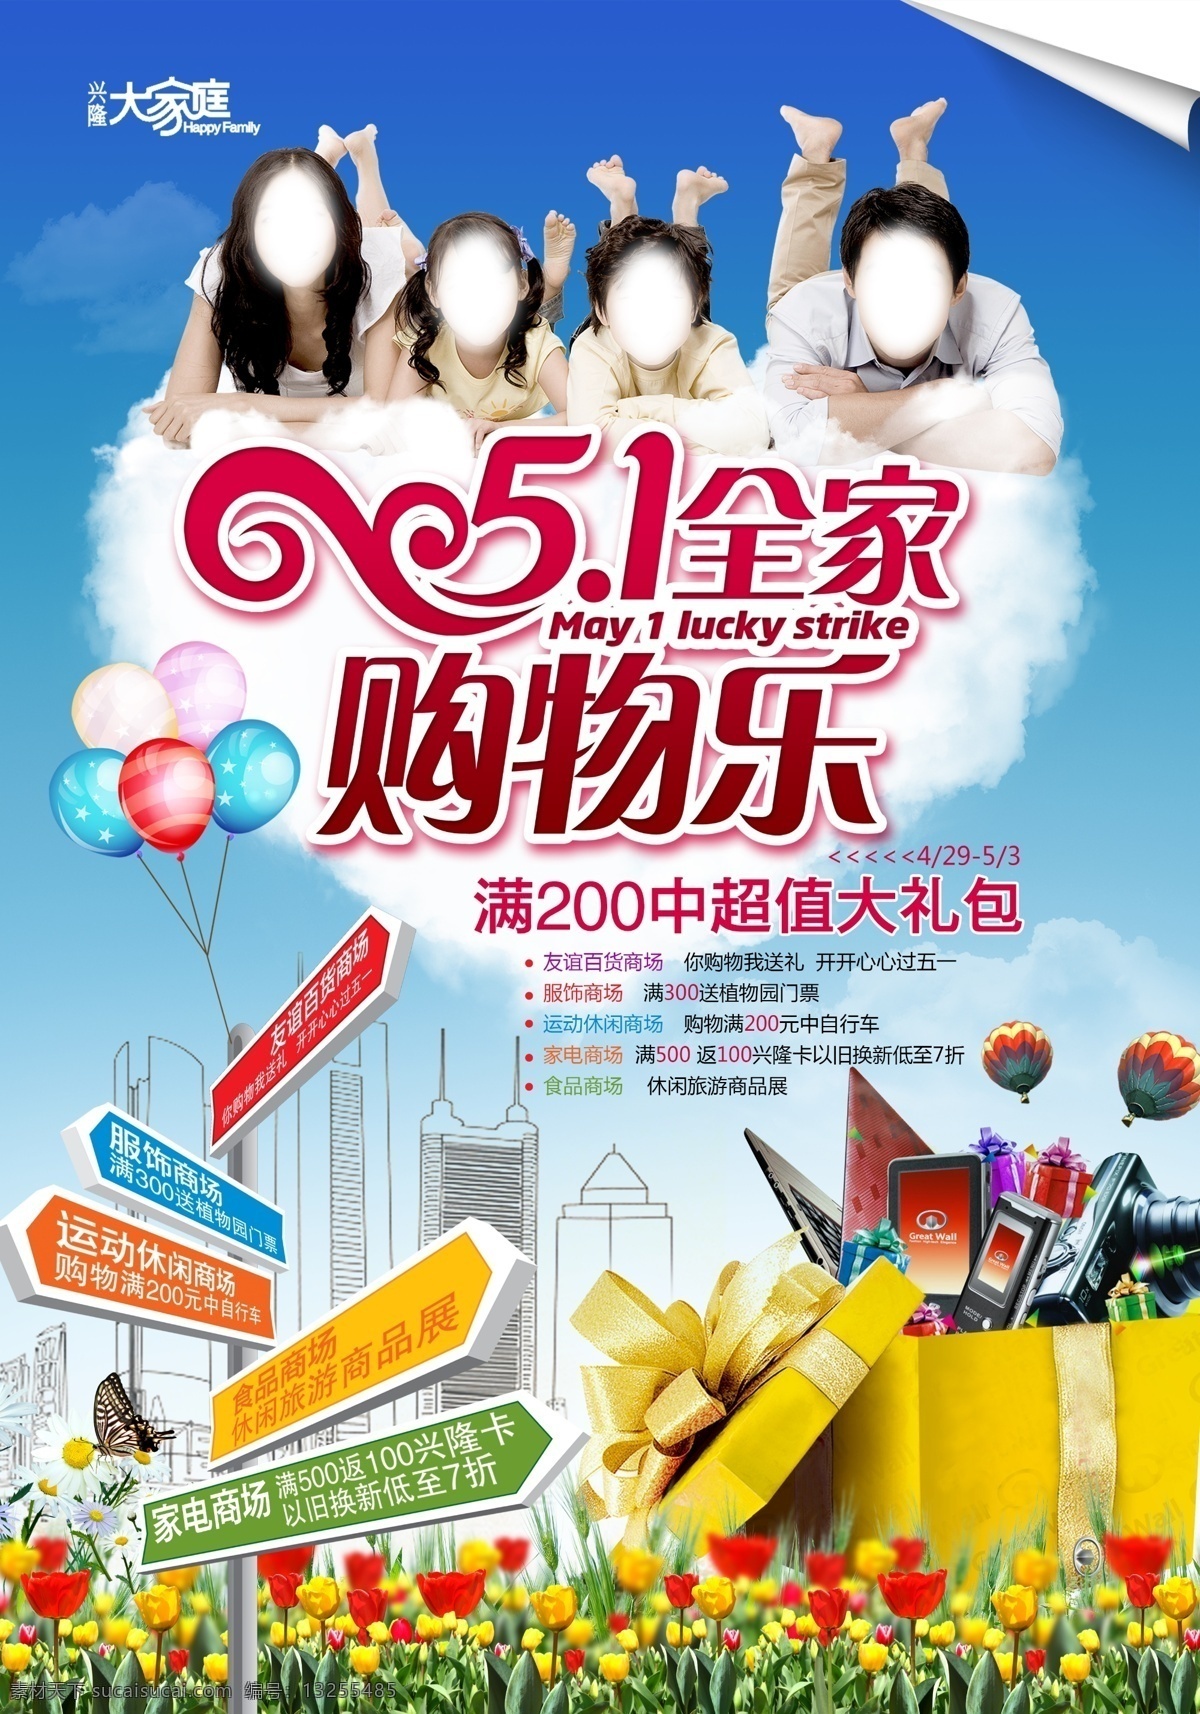 节日 商场 宣传单 五一 购物 活动 气球 商品 背景